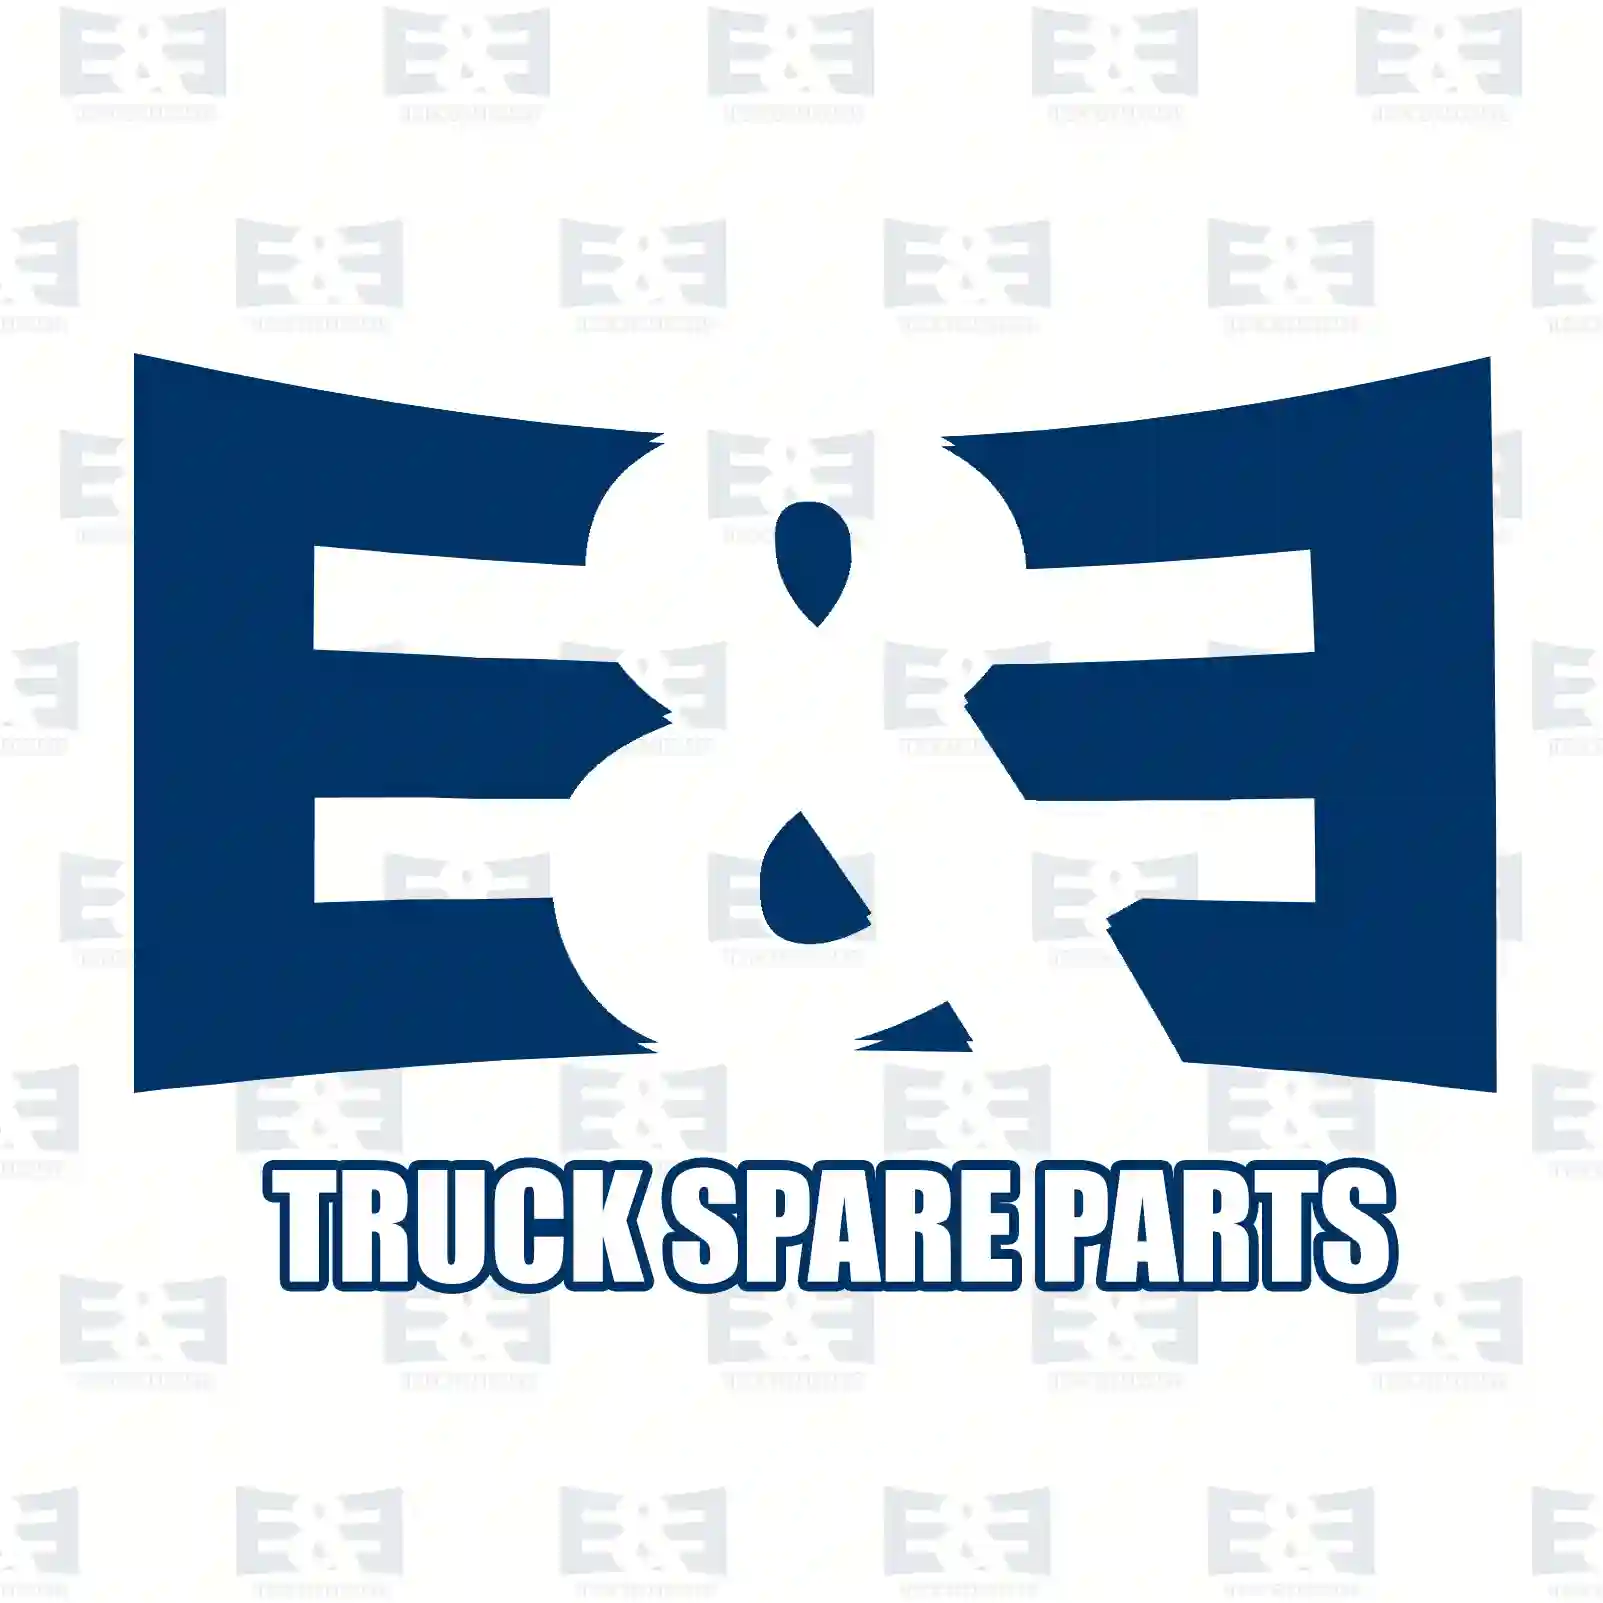 Shut-off valve, with bypass, 2E2278487, 0012608857, 0012609057, 0022600157, 0022600557, 0022600757, 0022602357, 0022602457, 0022604157, 0022606157 ||  2E2278487 E&E Truck Spare Parts | Truck Spare Parts, Auotomotive Spare Parts Shut-off valve, with bypass, 2E2278487, 0012608857, 0012609057, 0022600157, 0022600557, 0022600757, 0022602357, 0022602457, 0022604157, 0022606157 ||  2E2278487 E&E Truck Spare Parts | Truck Spare Parts, Auotomotive Spare Parts